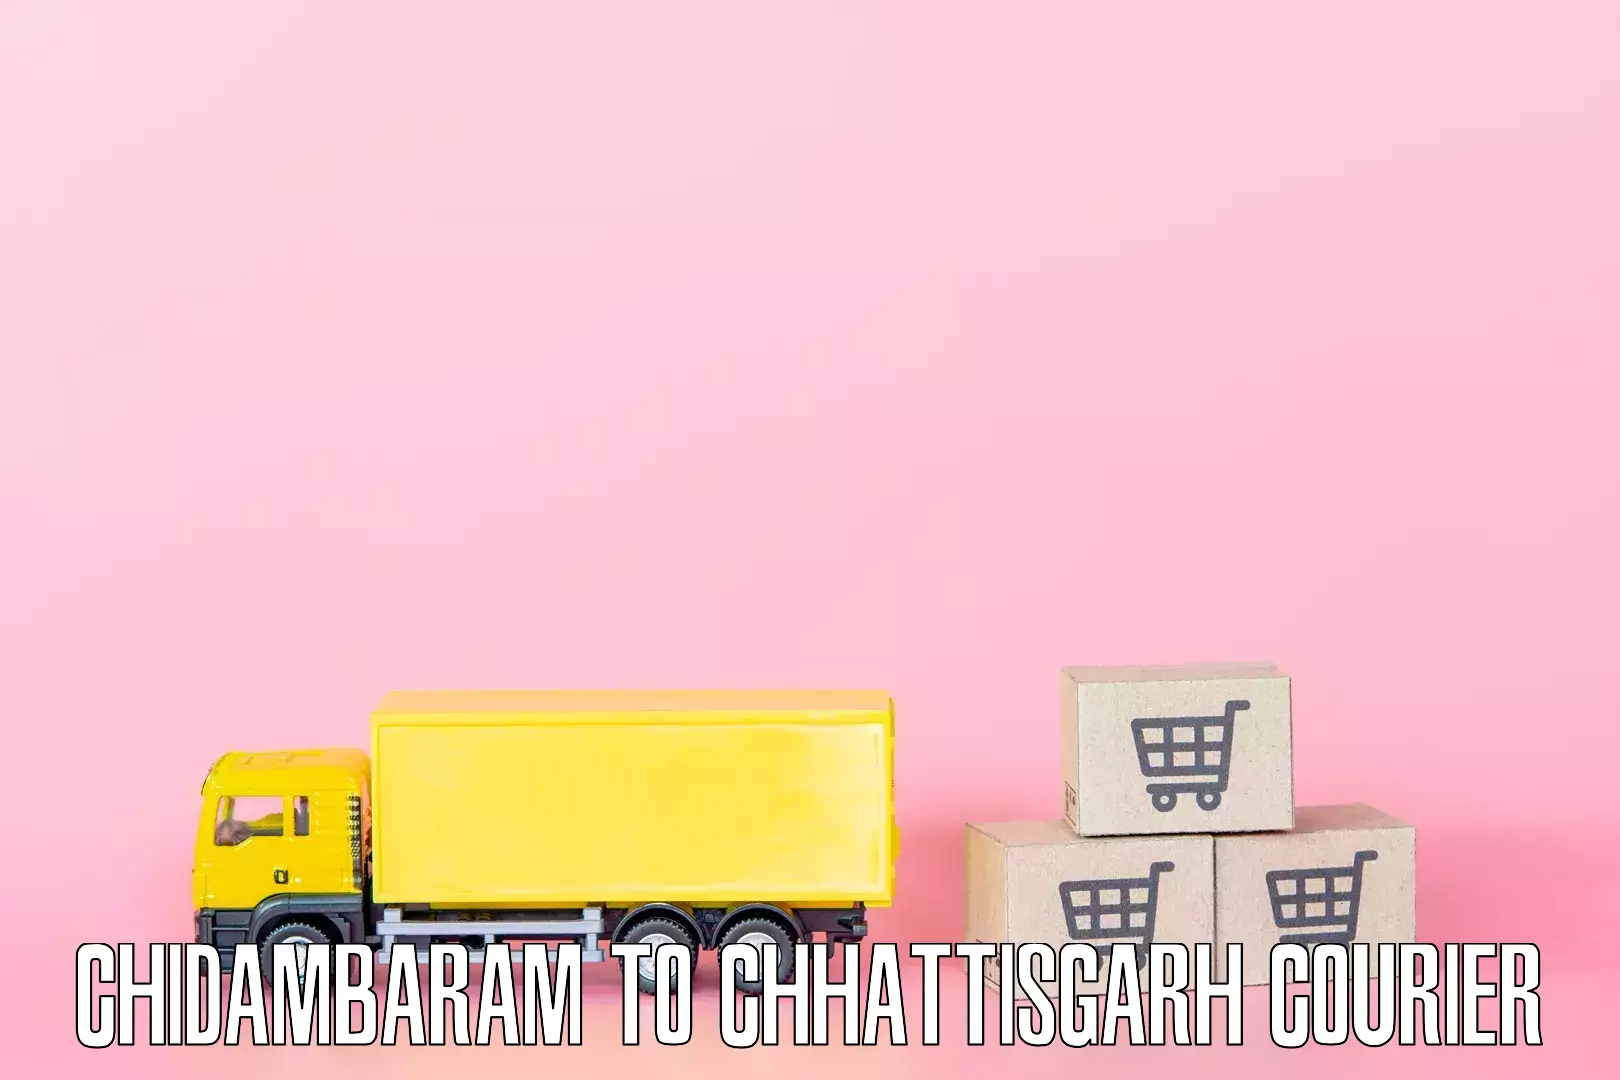 Skilled furniture movers Chidambaram to Korea Chhattisgarh